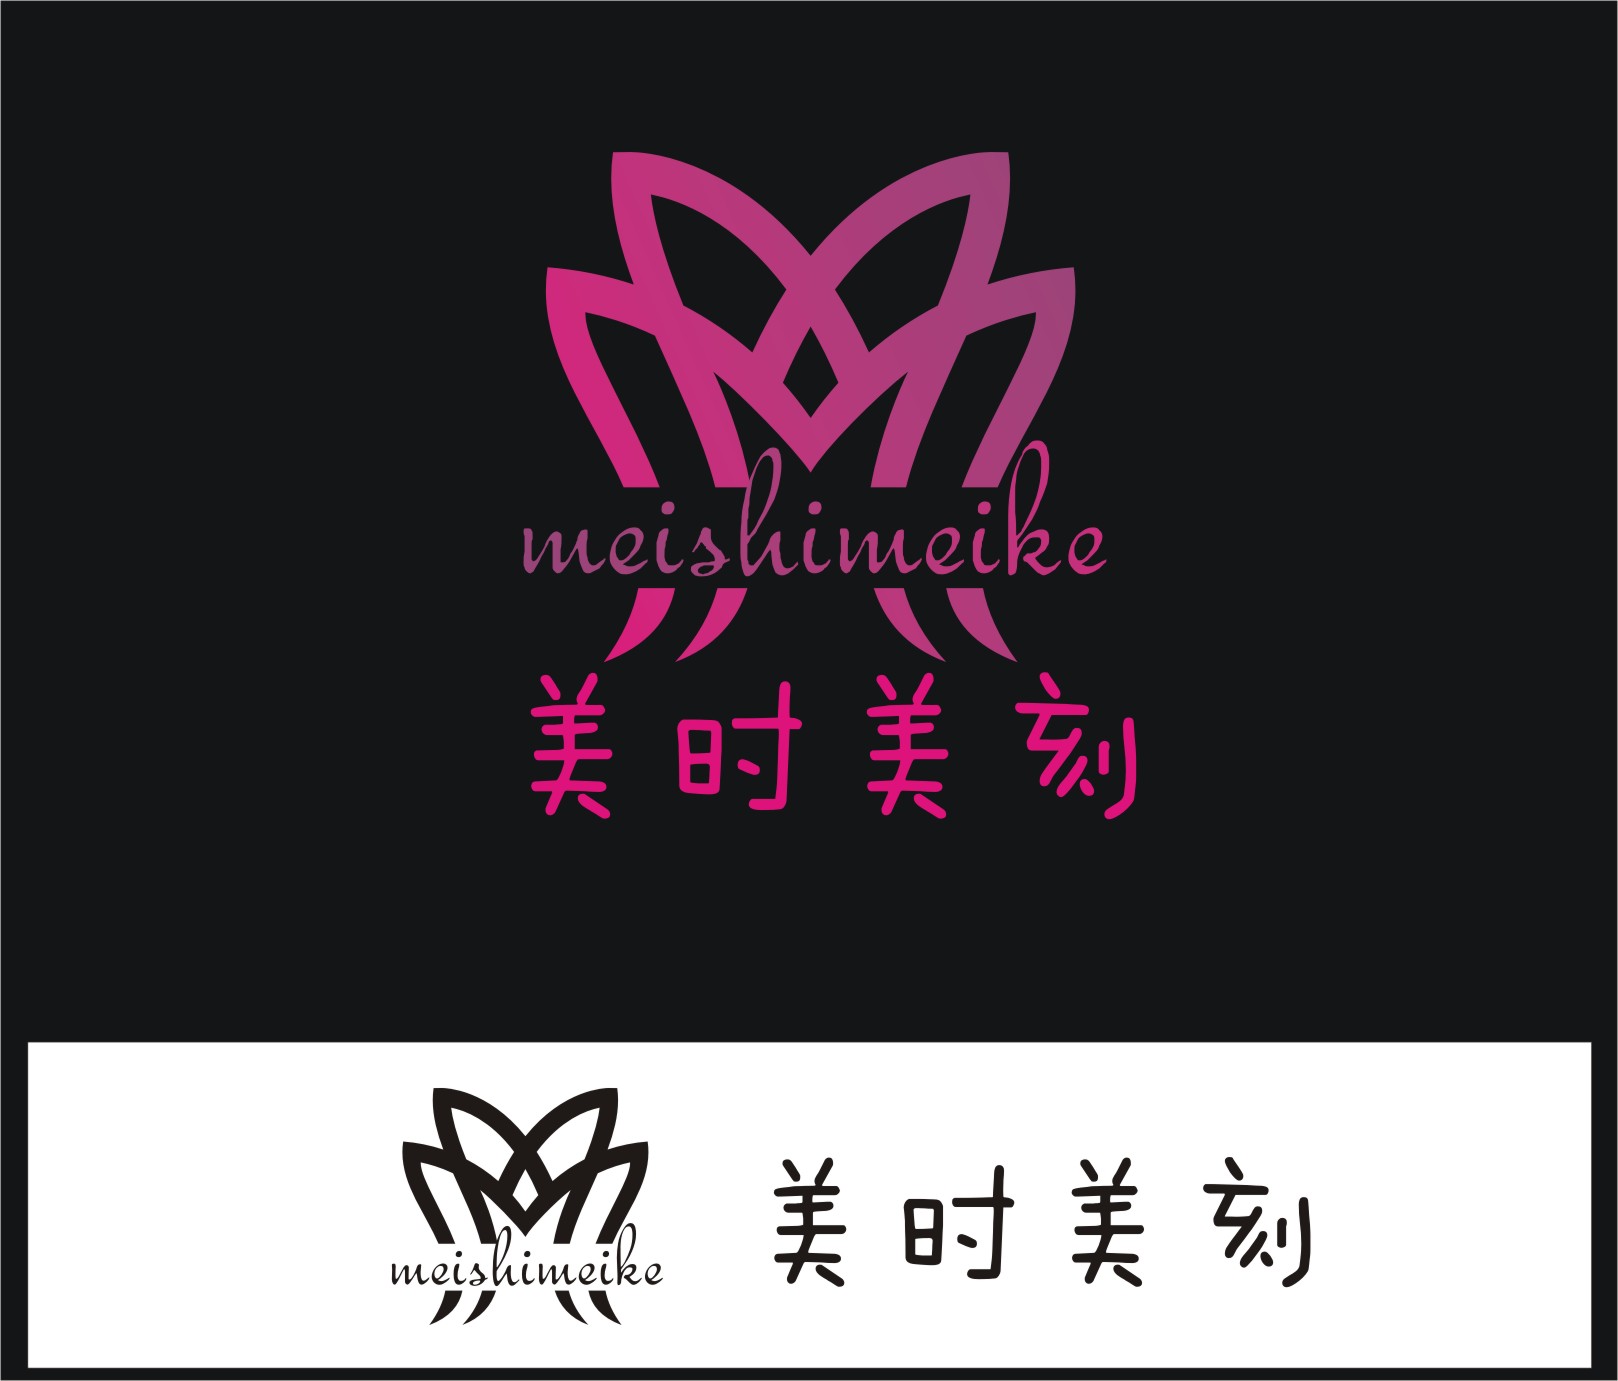 淘宝化化妆品店铺 logo设计第27815881号稿件